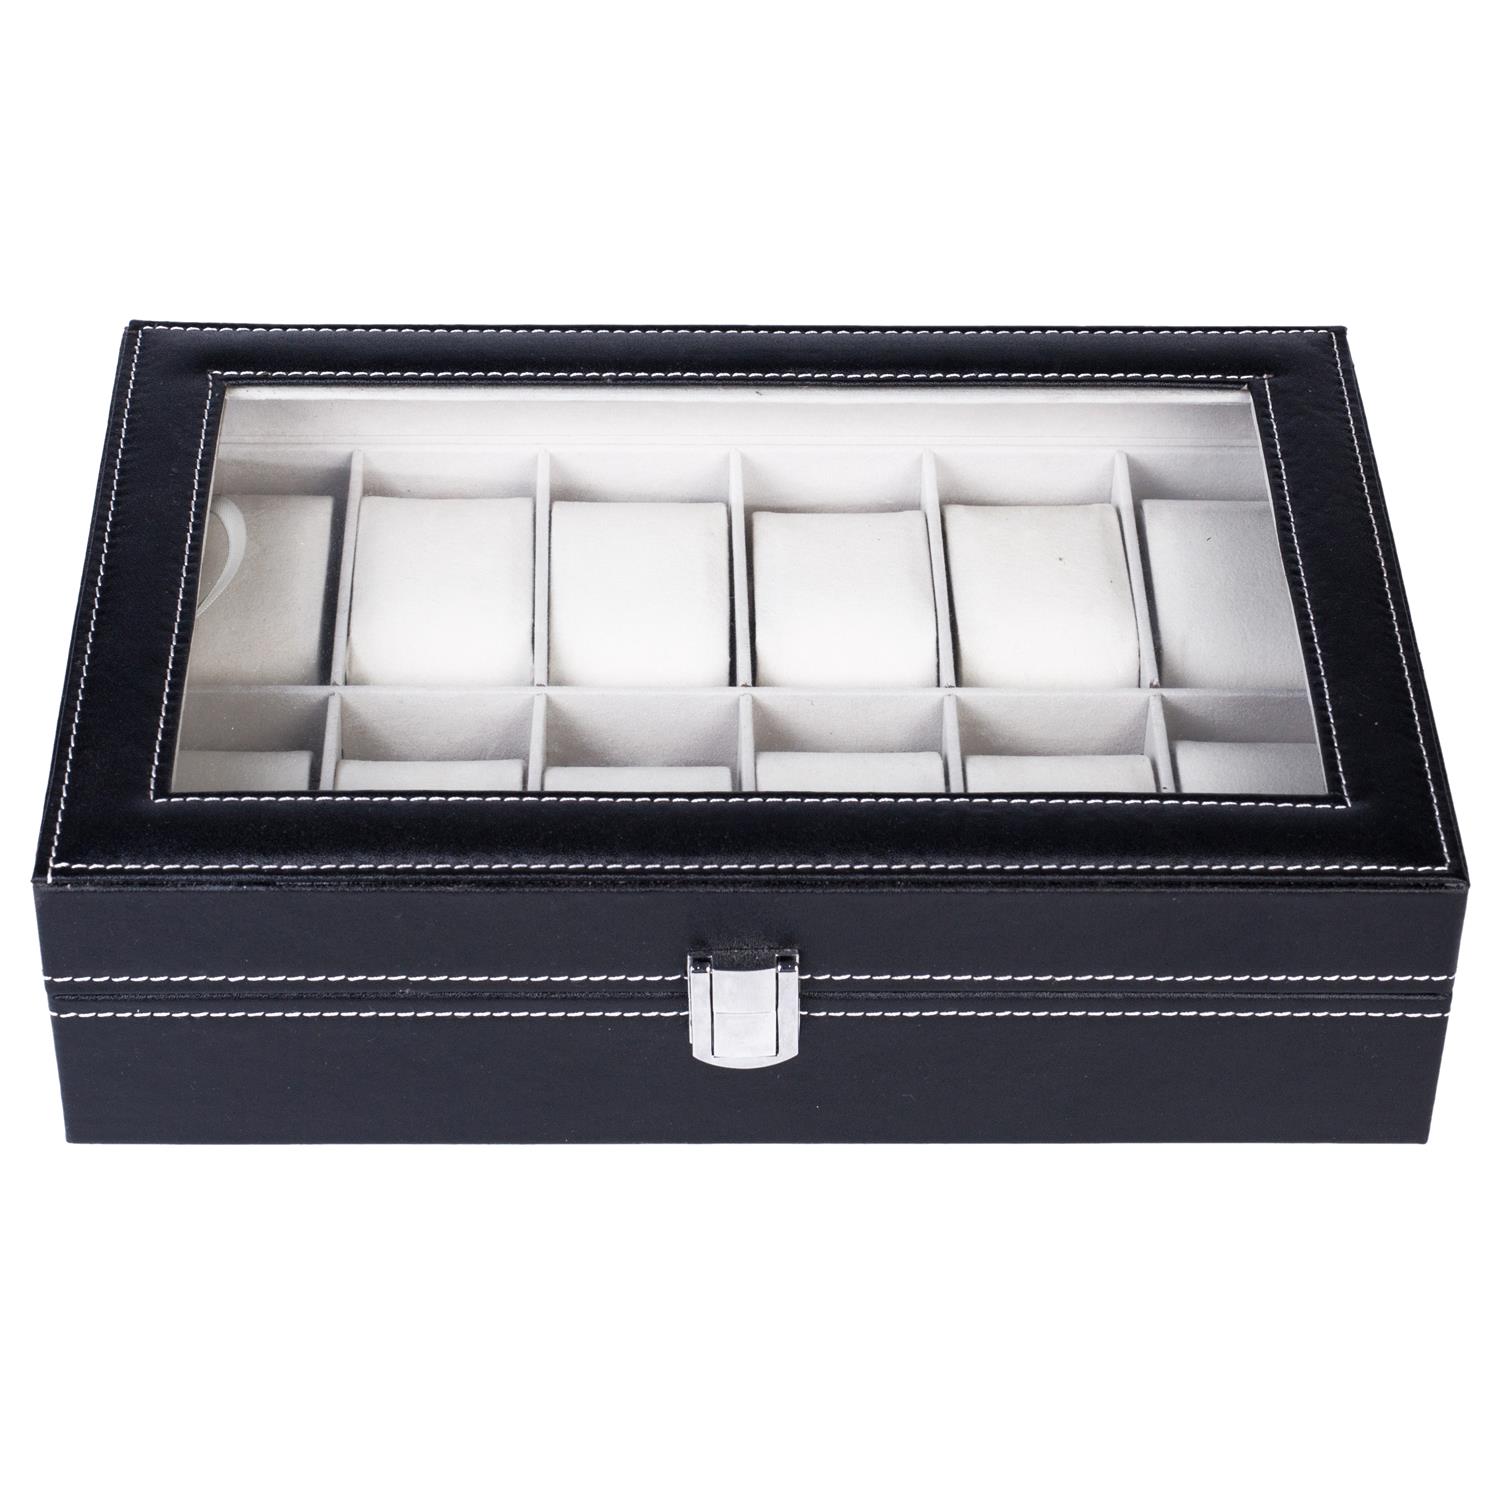 Ktaxon 12 Slot Watch Storage Box